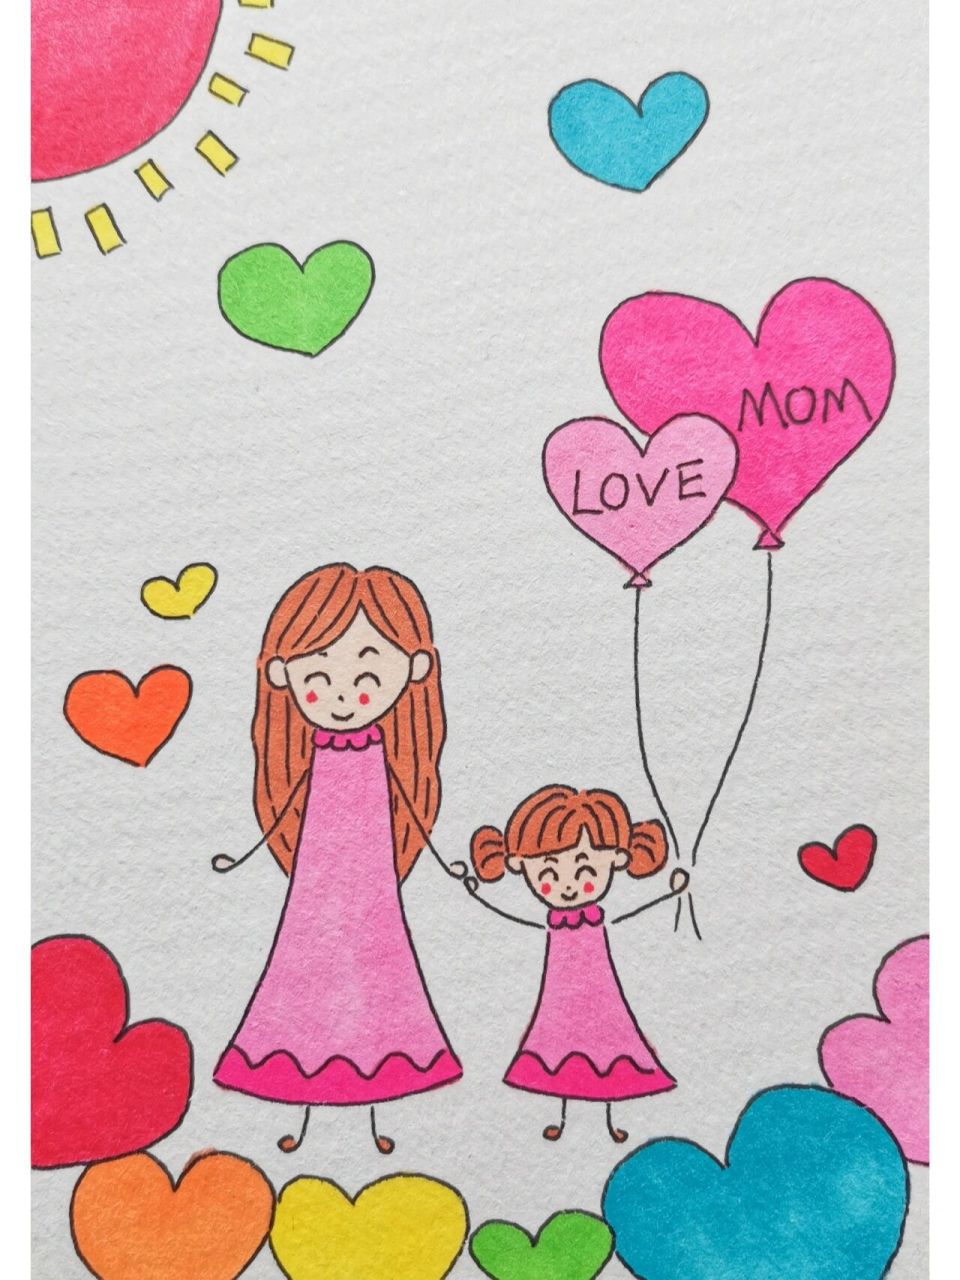 三八节 母亲节 主题 马克笔育儿简笔画 这样简单线条式的妈妈和孩子